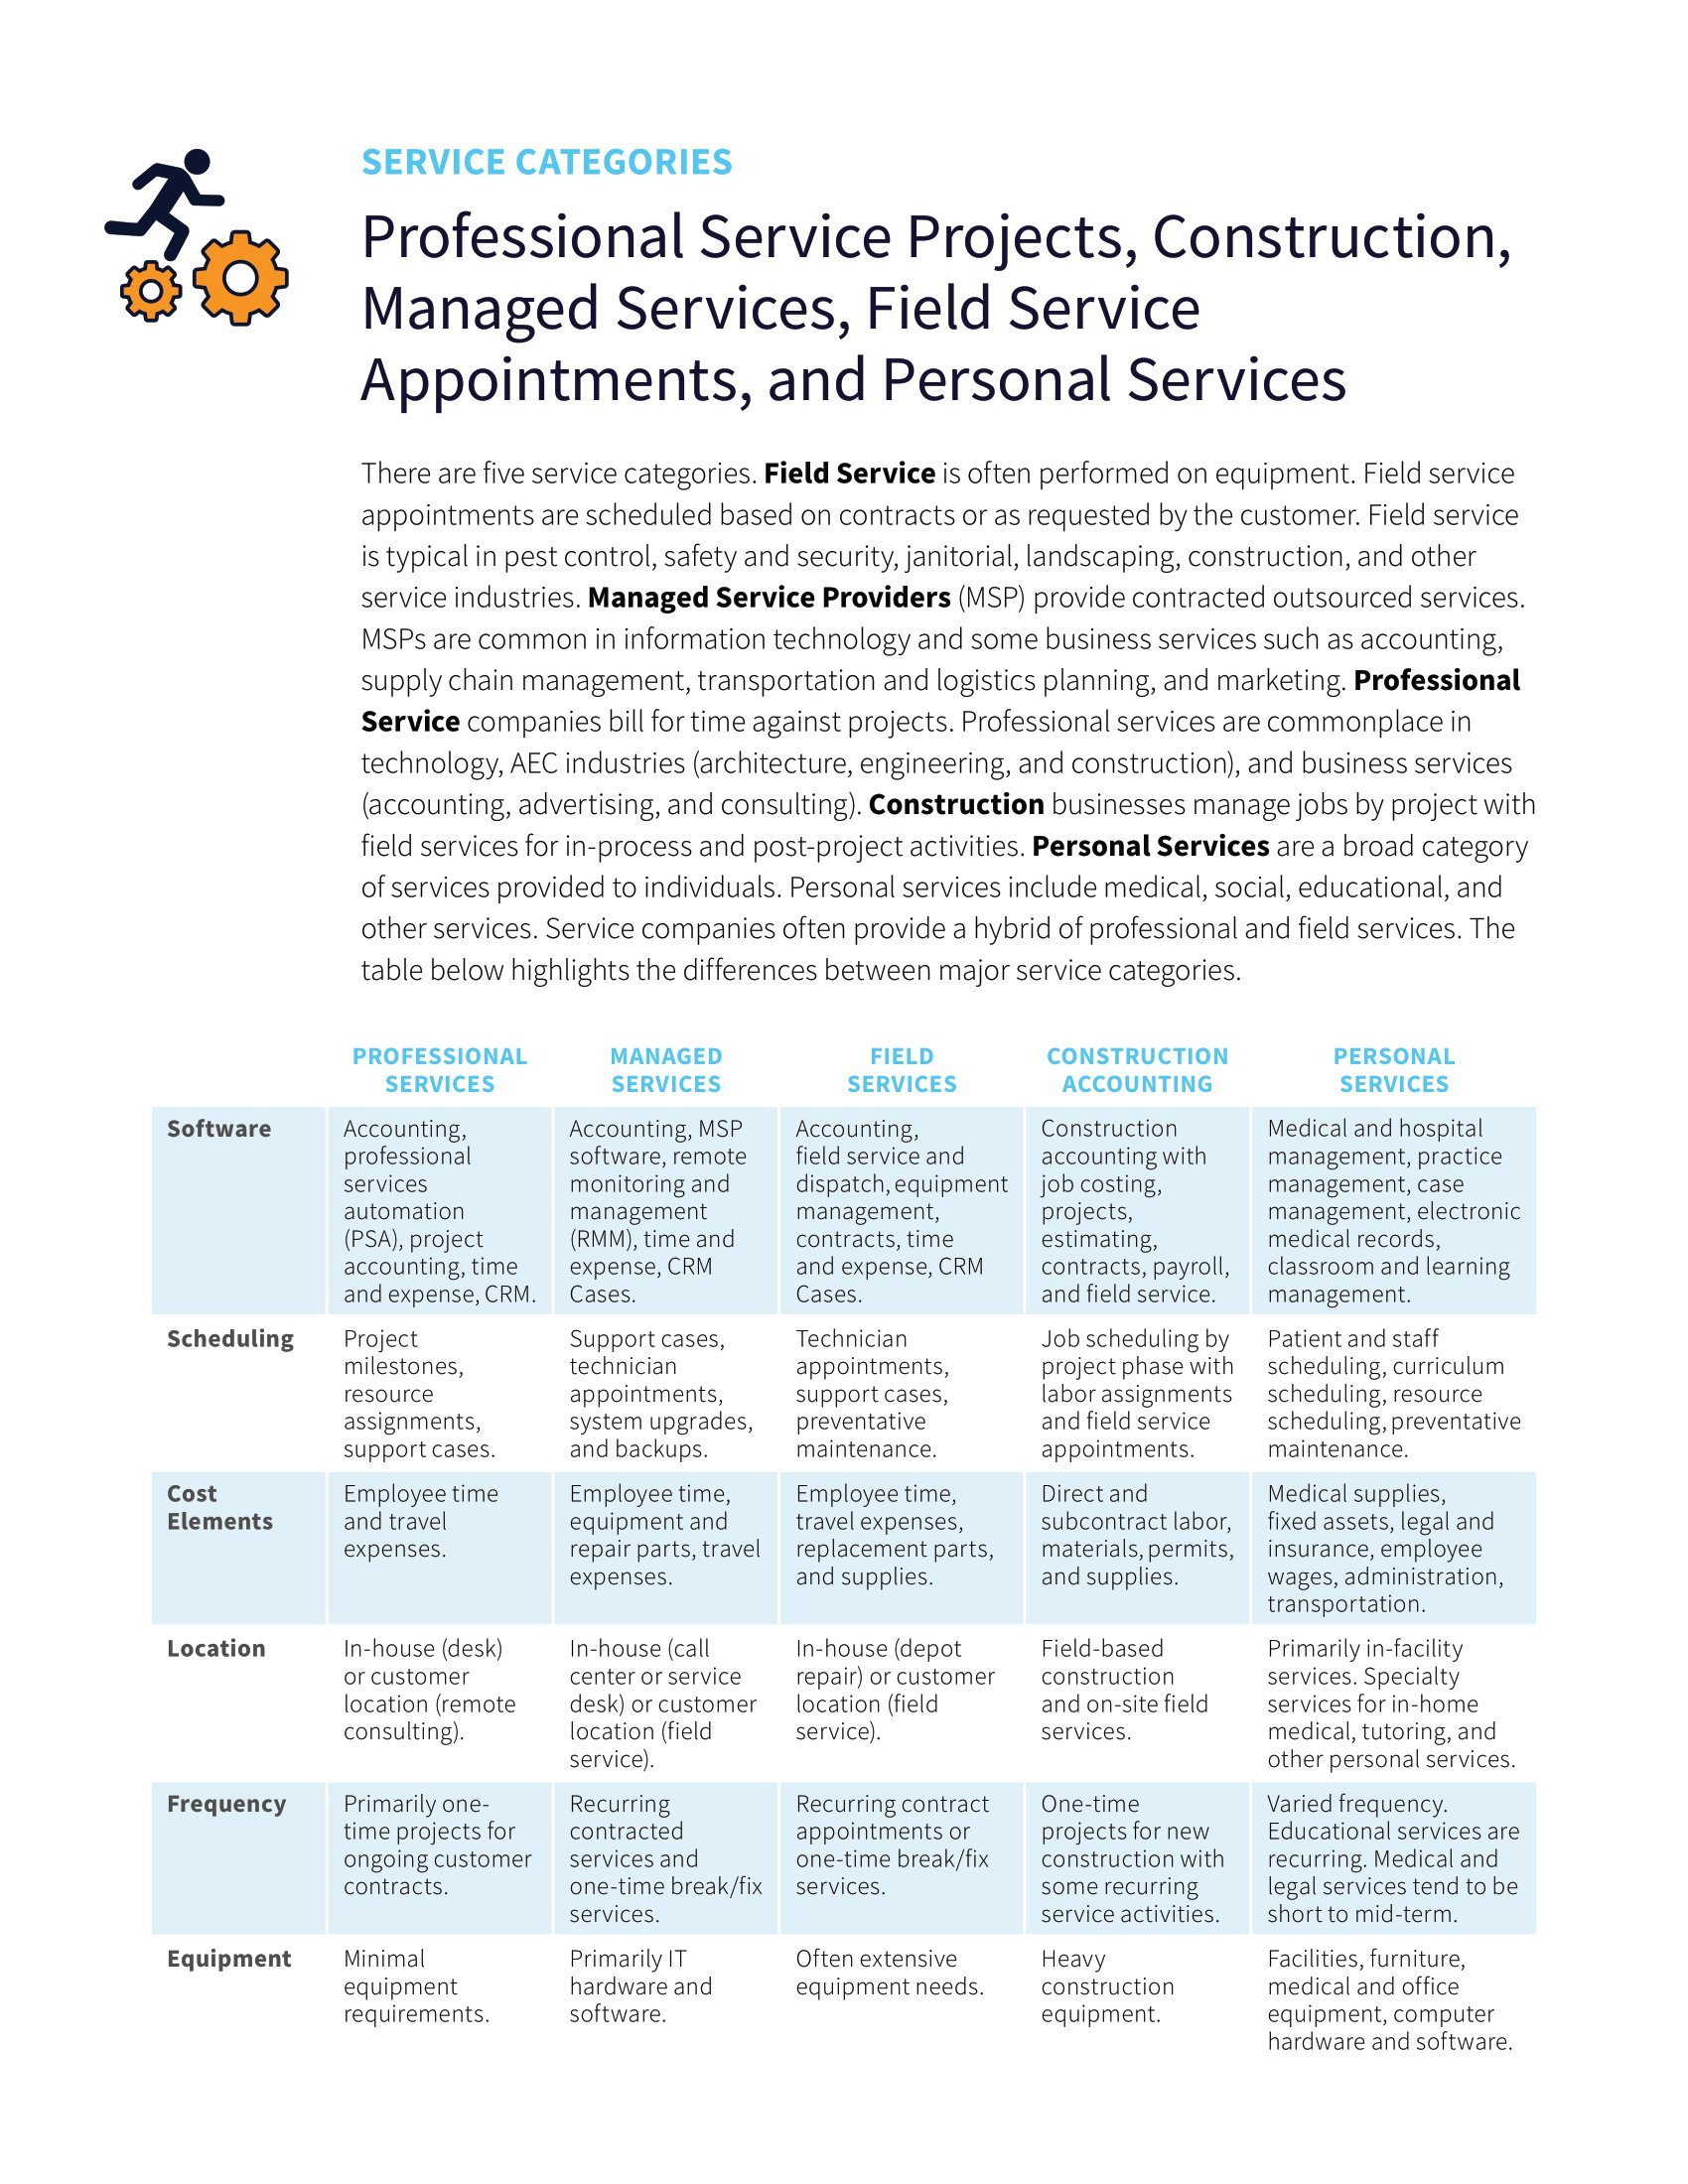 Stimuler la croissance grâce aux applications de gestion des services en nuage, page 1